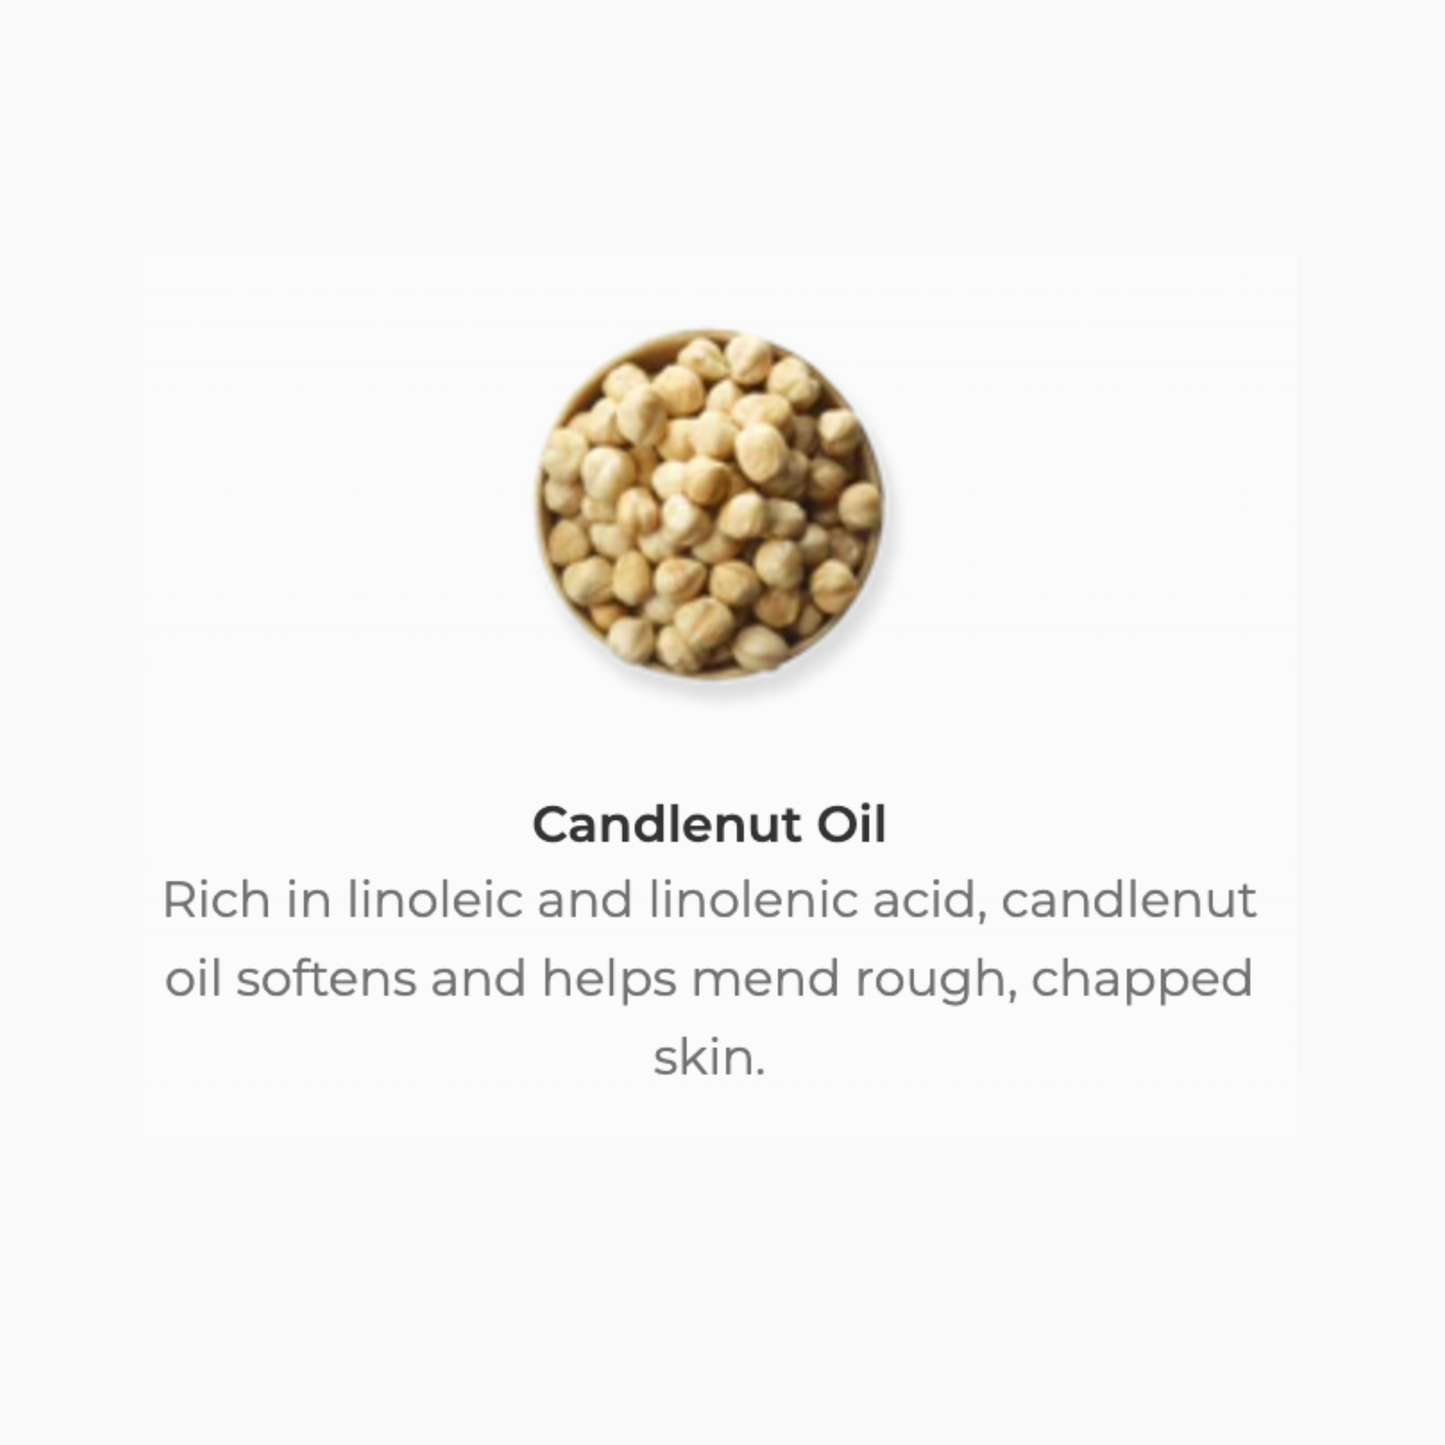 Radiance Vitality Oil, 1 oz - Radiant Skin Care by JUARA Skincare